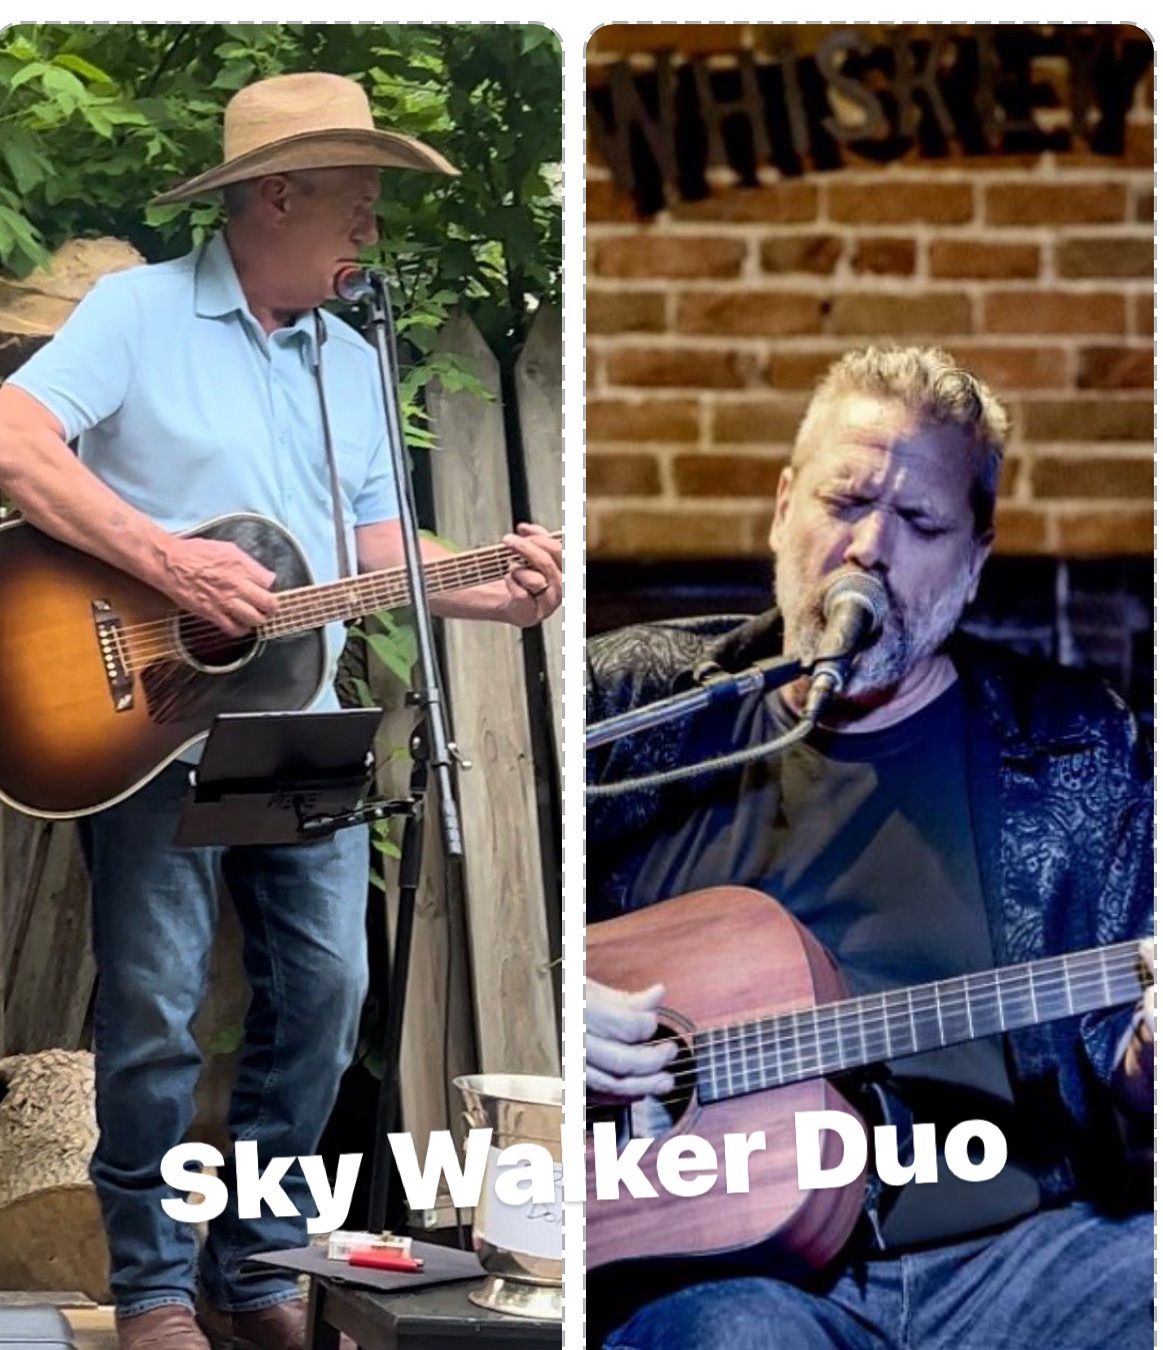 Sky Walker Duo